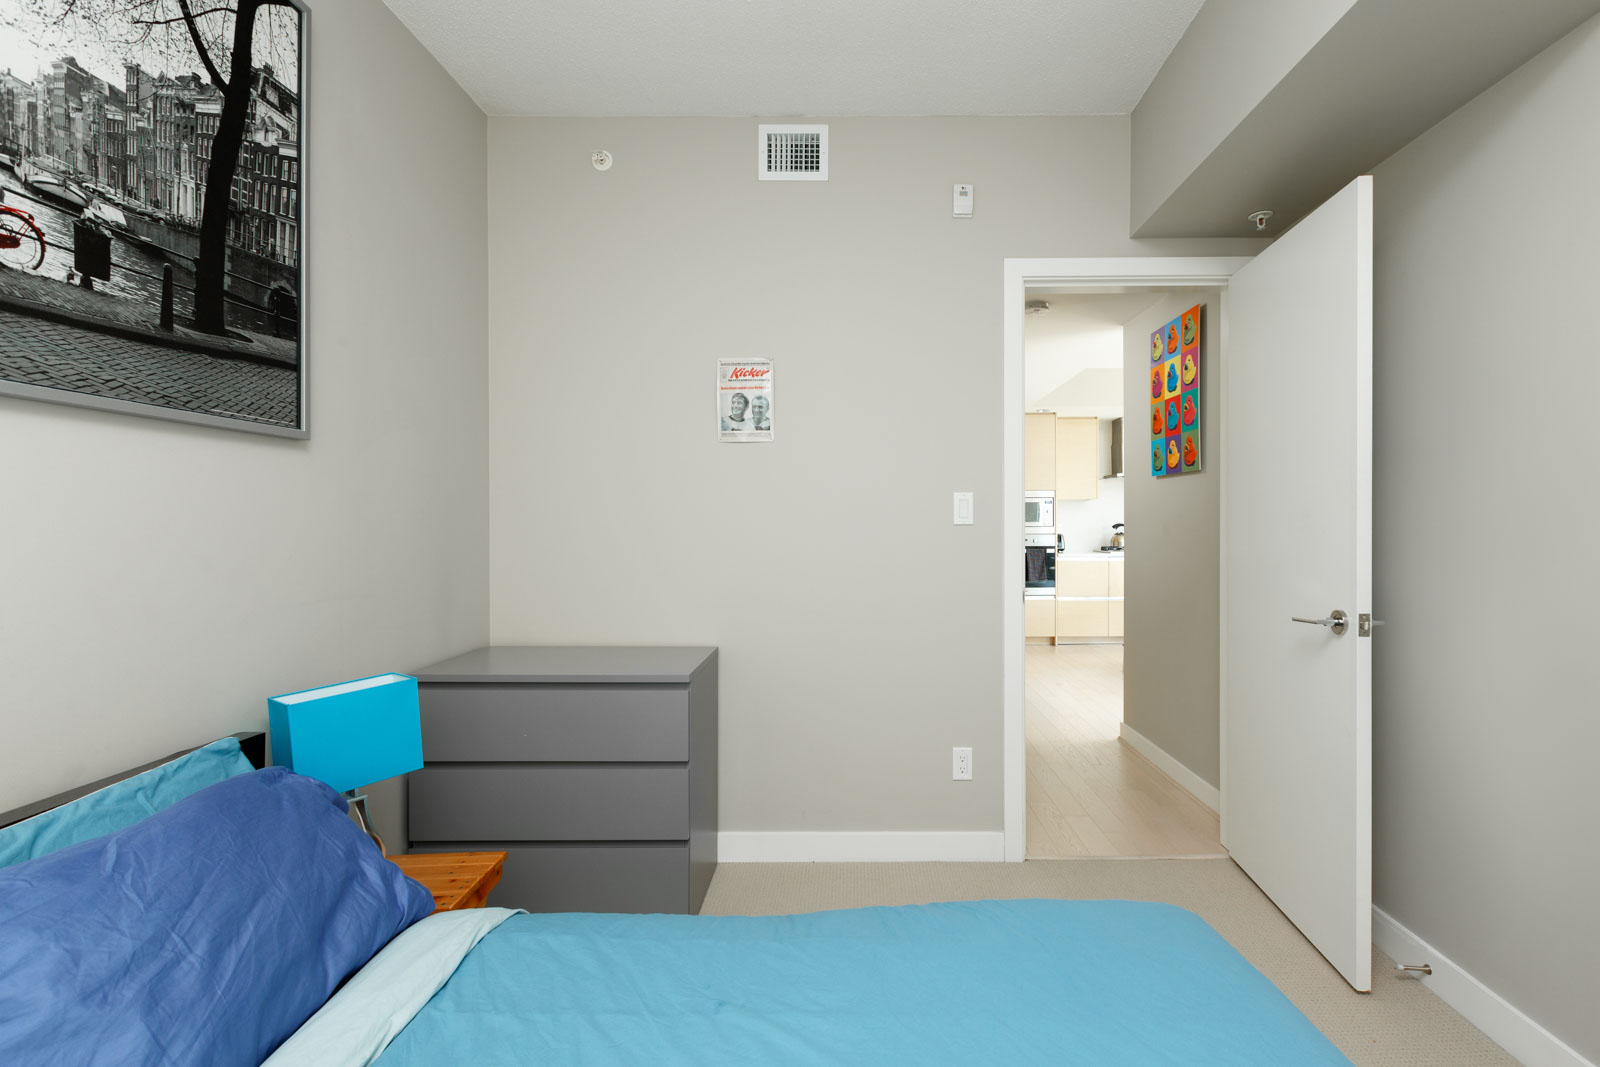 Bedroom in Vancouver rental condo.